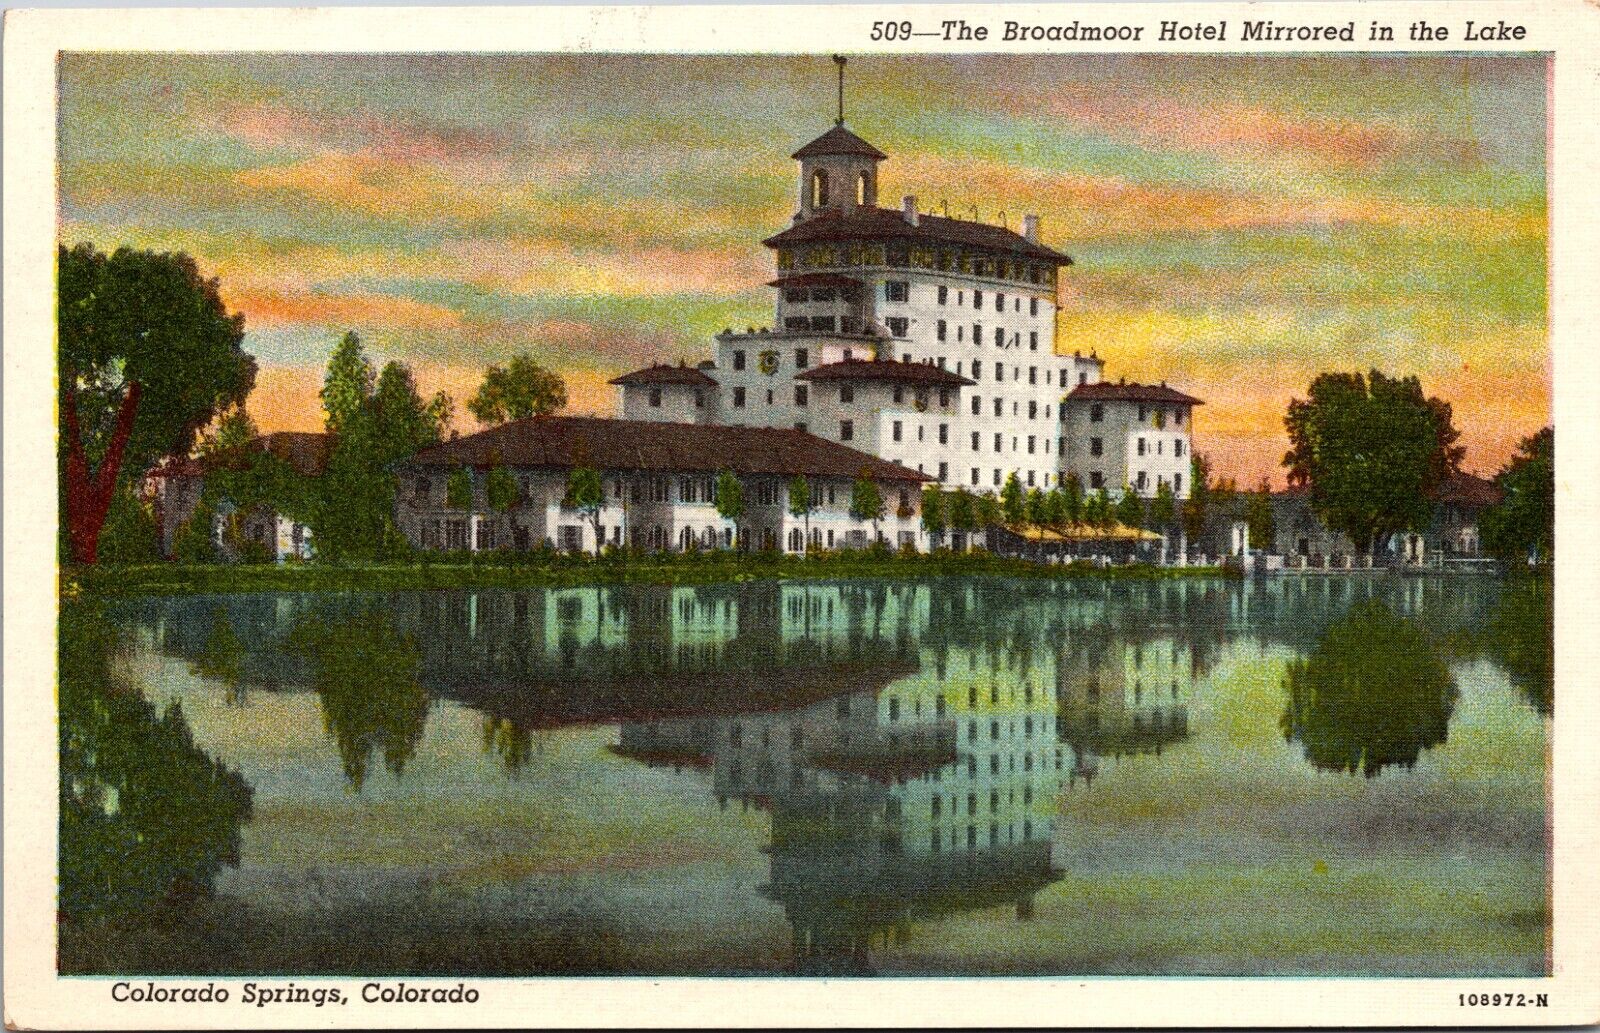 Broadmoor Hotel Colorado Springs Colorado 1946 Mirrored In Lake Sanborn Postcard